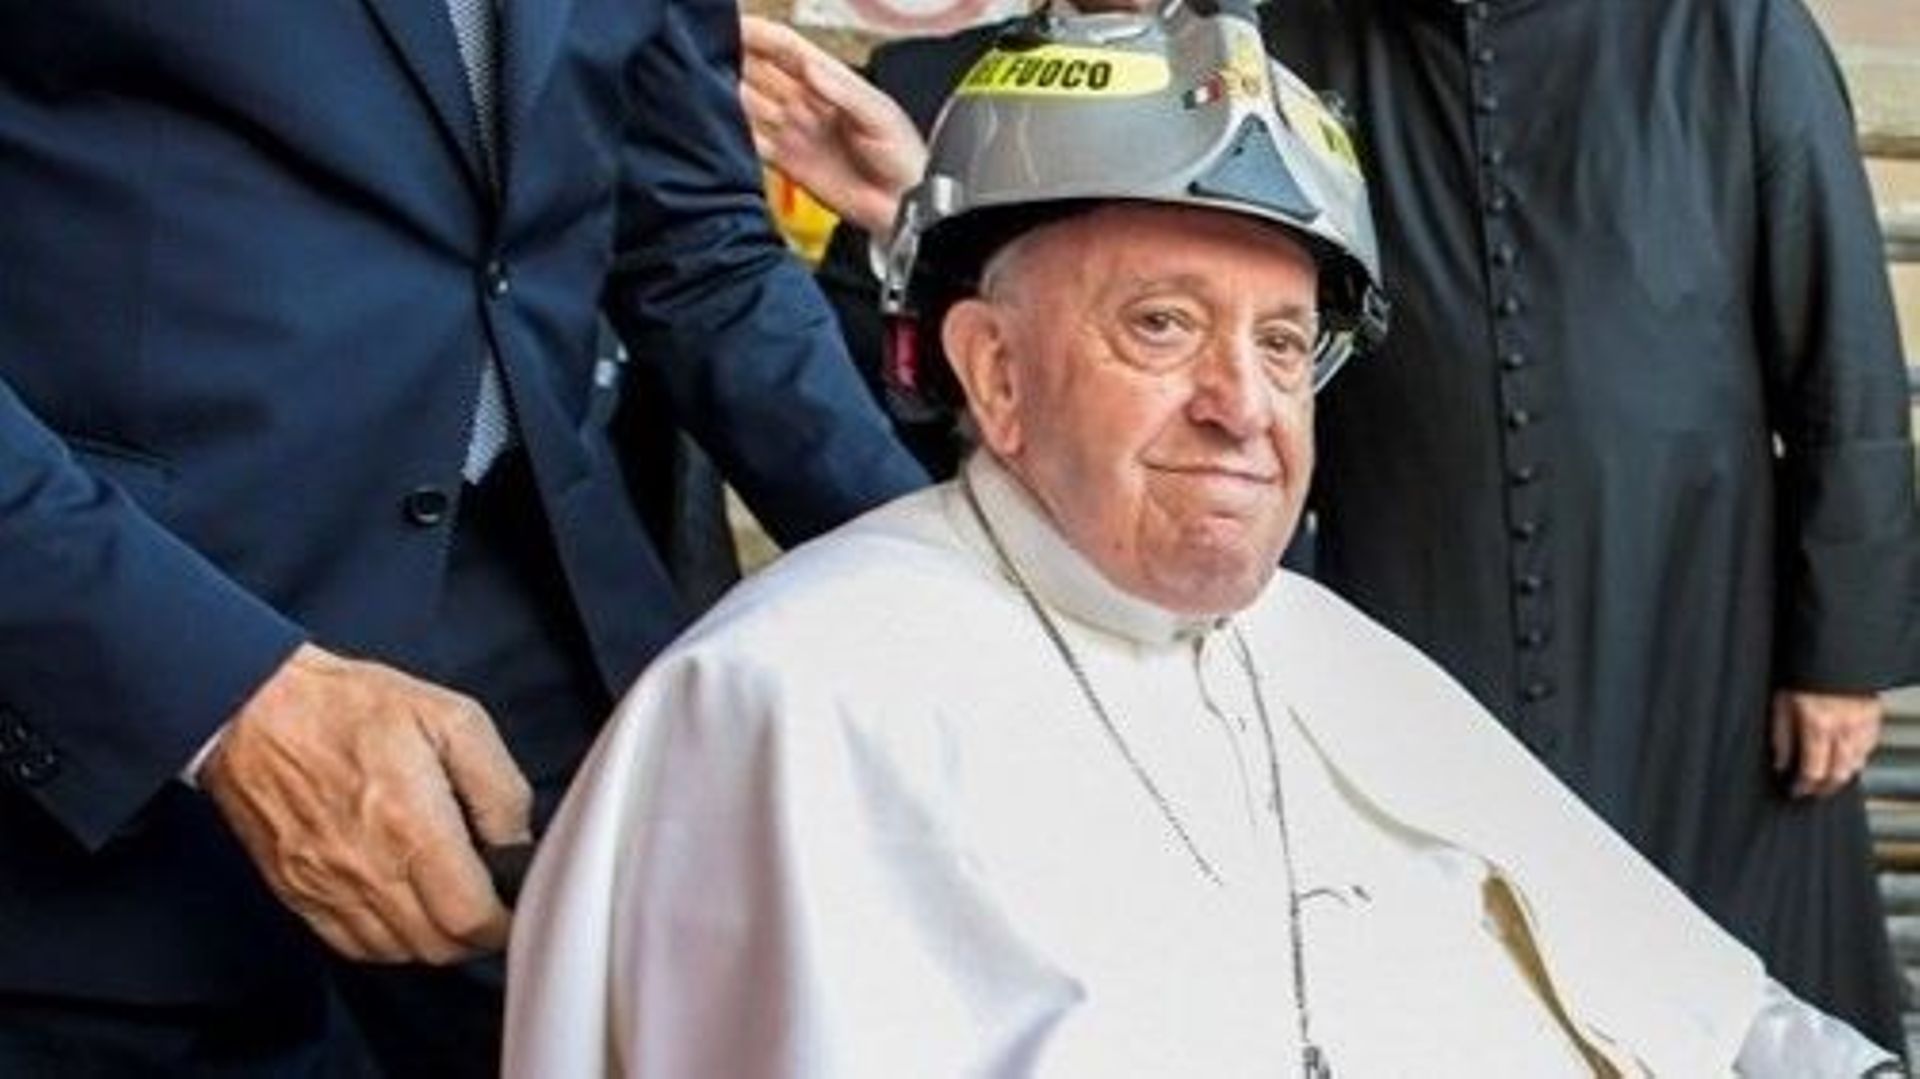 Le pape à L’Aquila, coiffé d’un casque de pompier